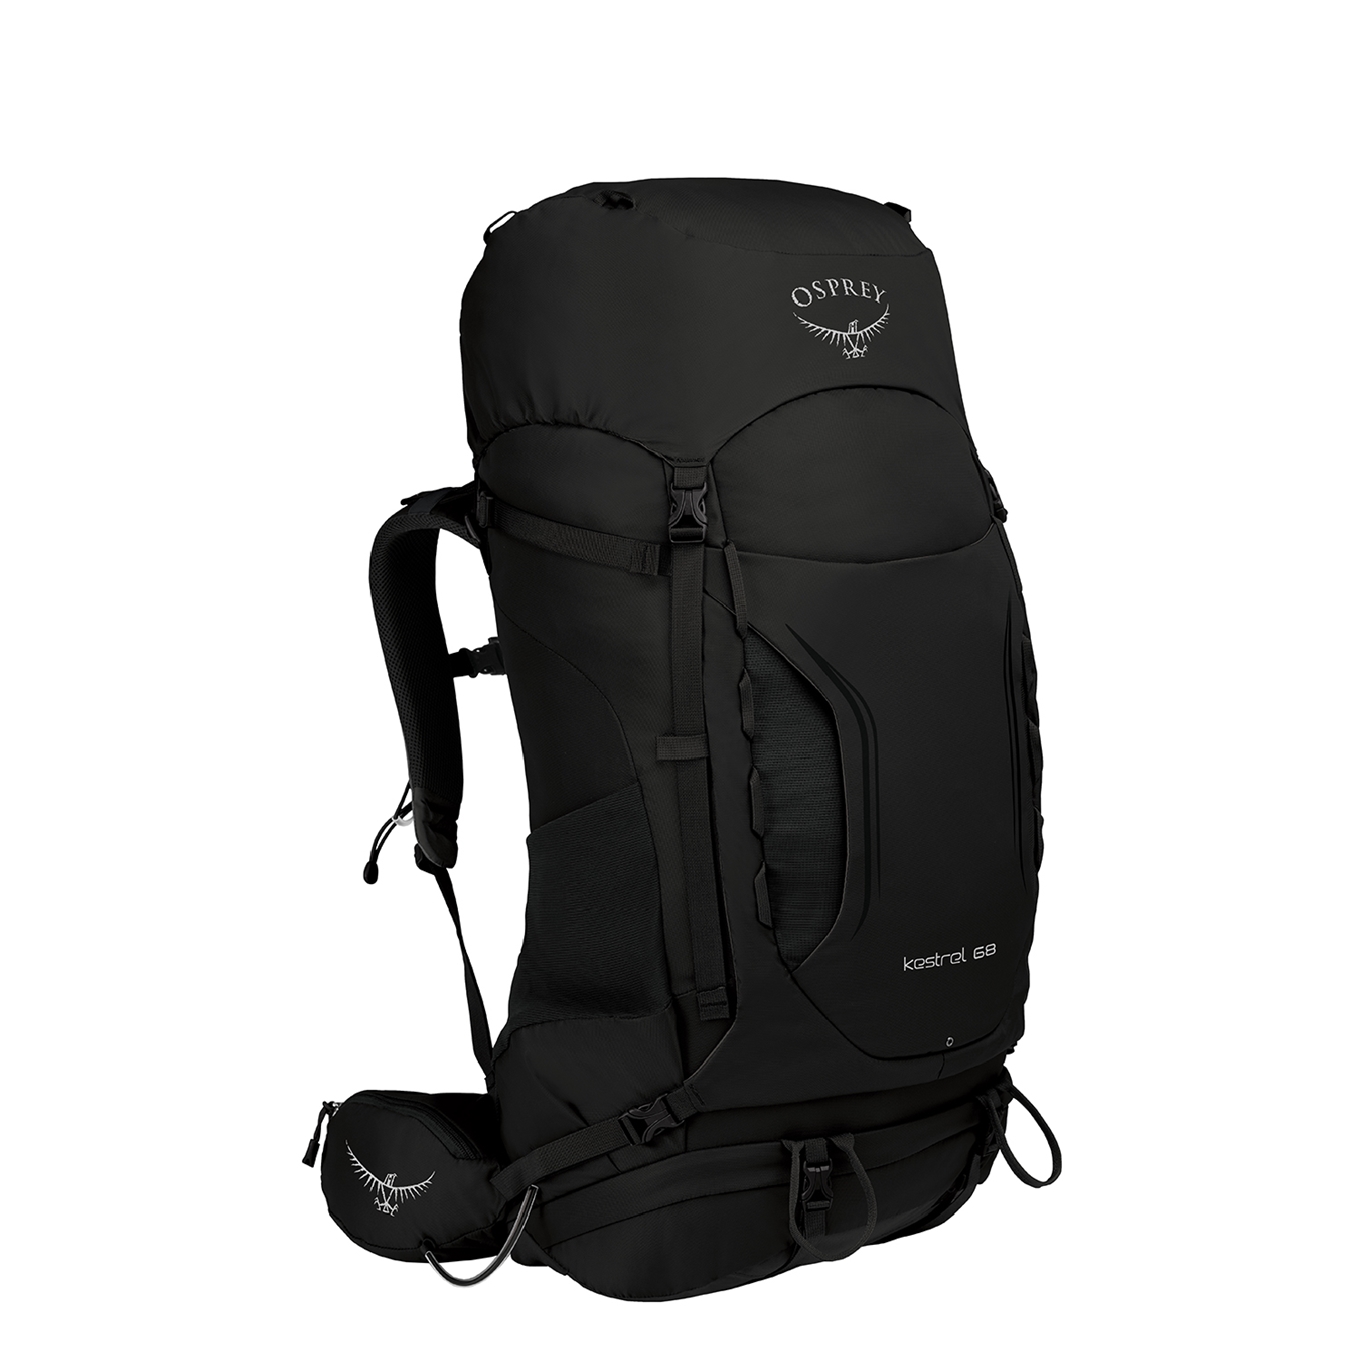 Osprey Kestrel 68 Backpack S/M black backpack